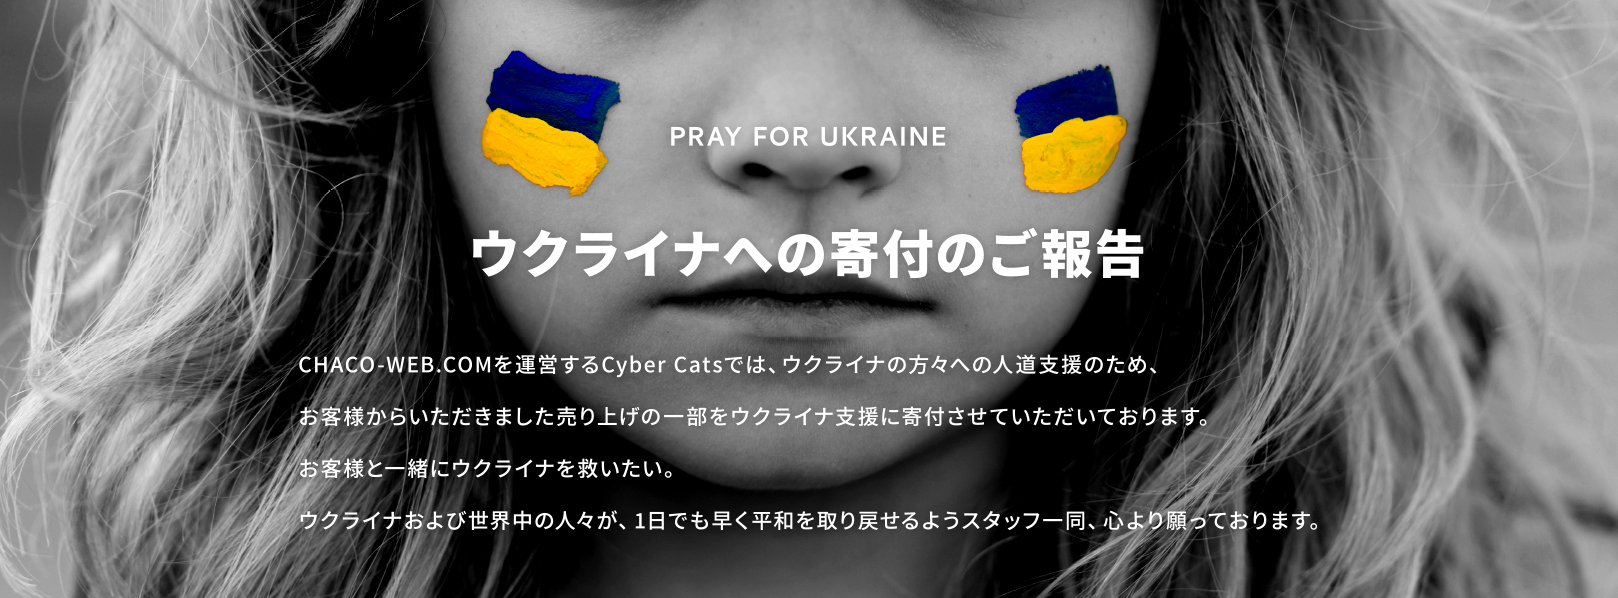 ウクライナへの寄付のご報告